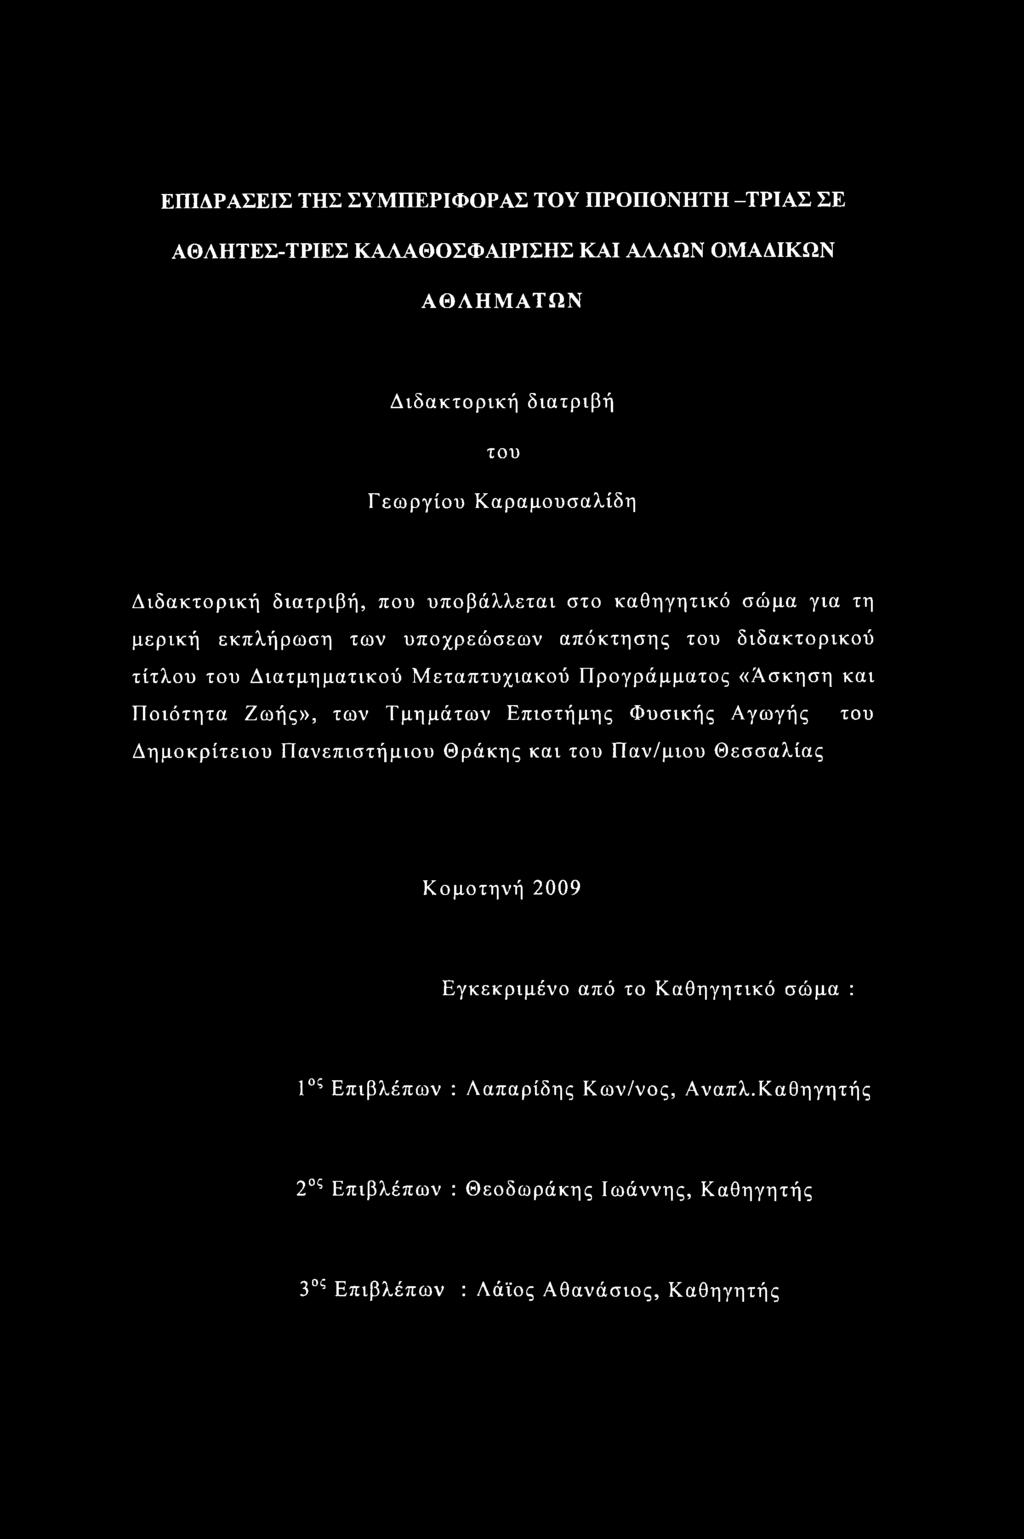 Προγράμματος «Ασκηση και Ποιότητα Ζωής», των Τμημάτων Επιστήμης Φυσικής Αγωγής του Δημοκρίτειου Πανεπιστήμιου Θράκης και του Παν/μιου Θεσσαλίας Κομοτηνή 2009